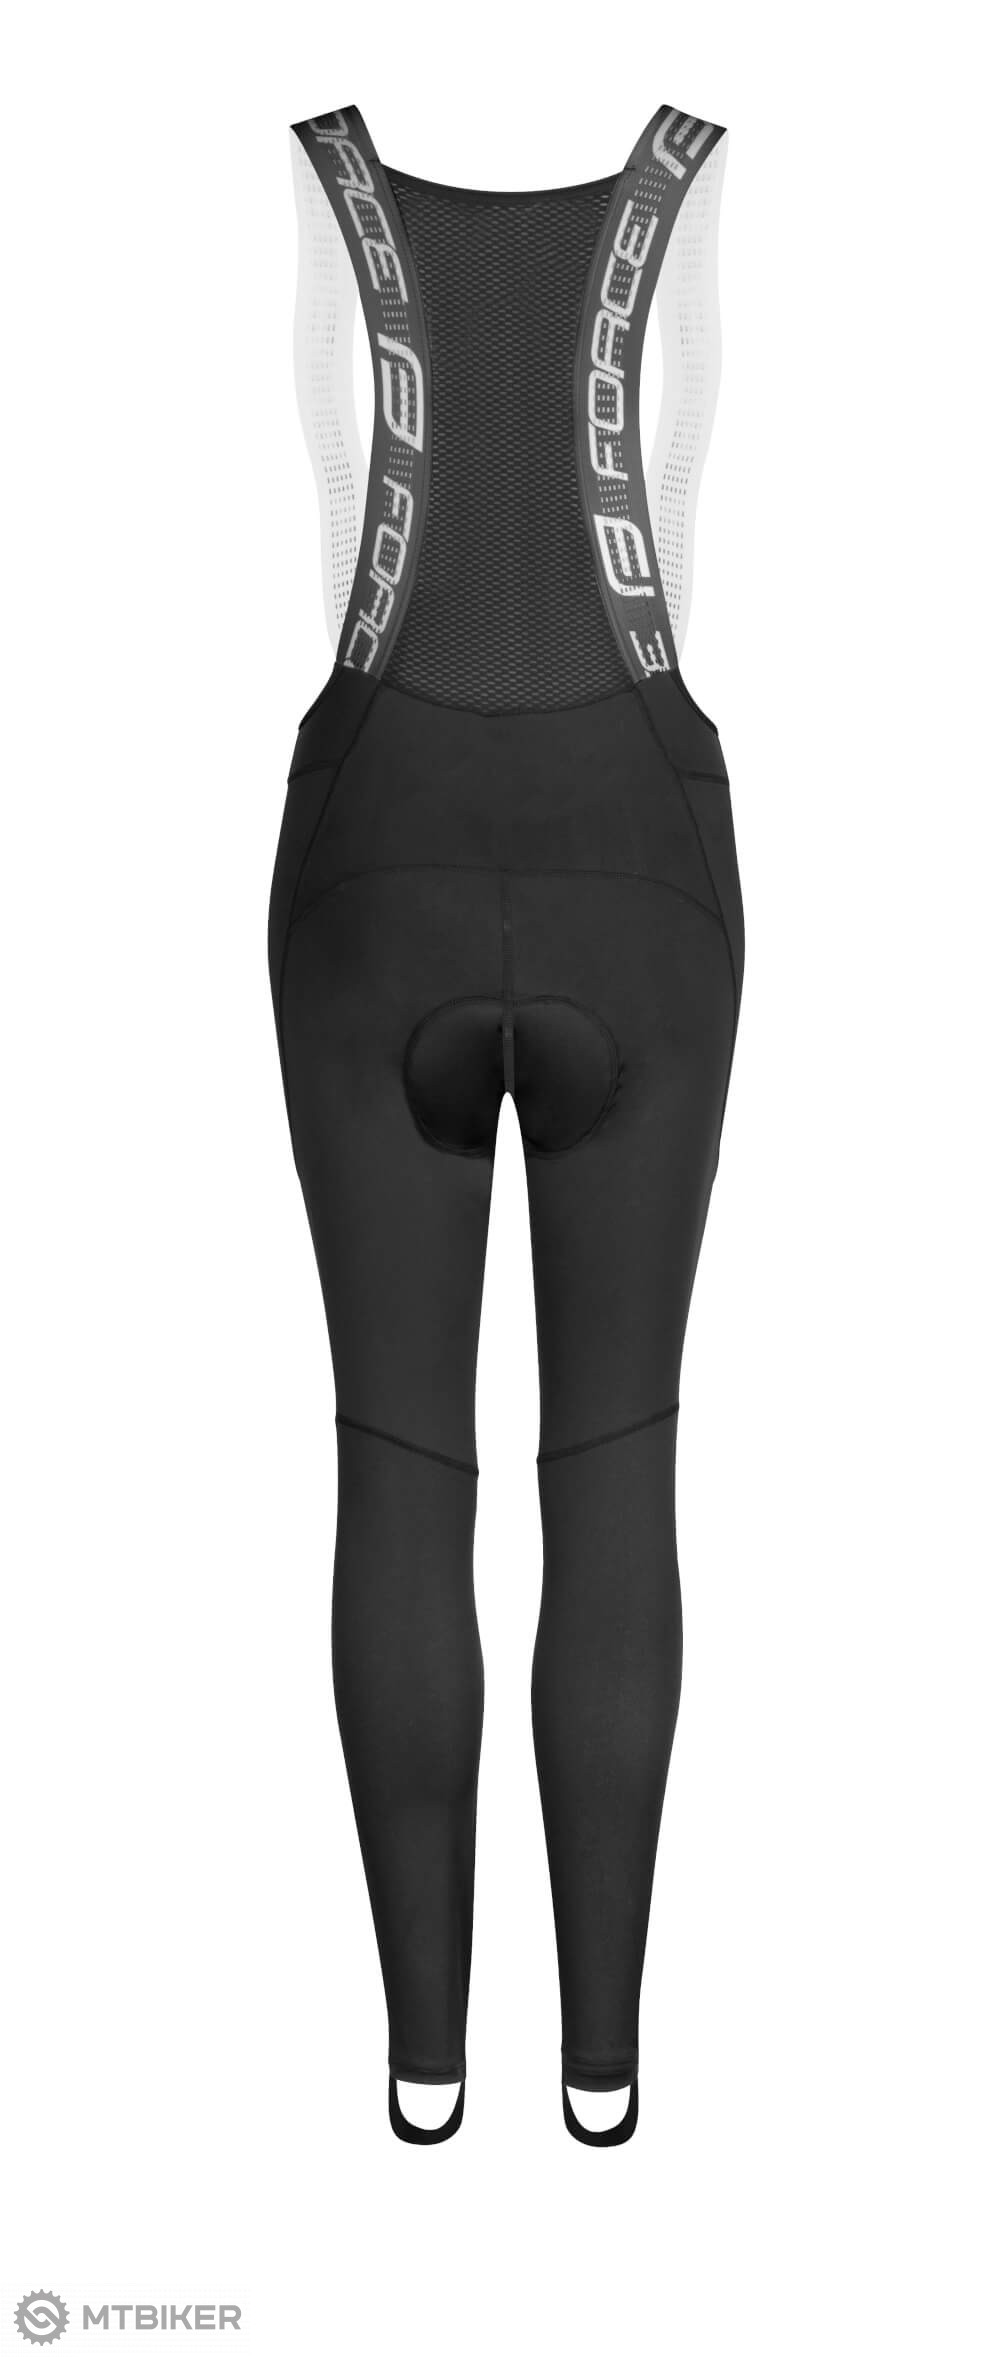 Buy LOSA Pearl Diamante Elastic Suspenders Shirt Braces for Women Pants  Trousers Black at Amazonin